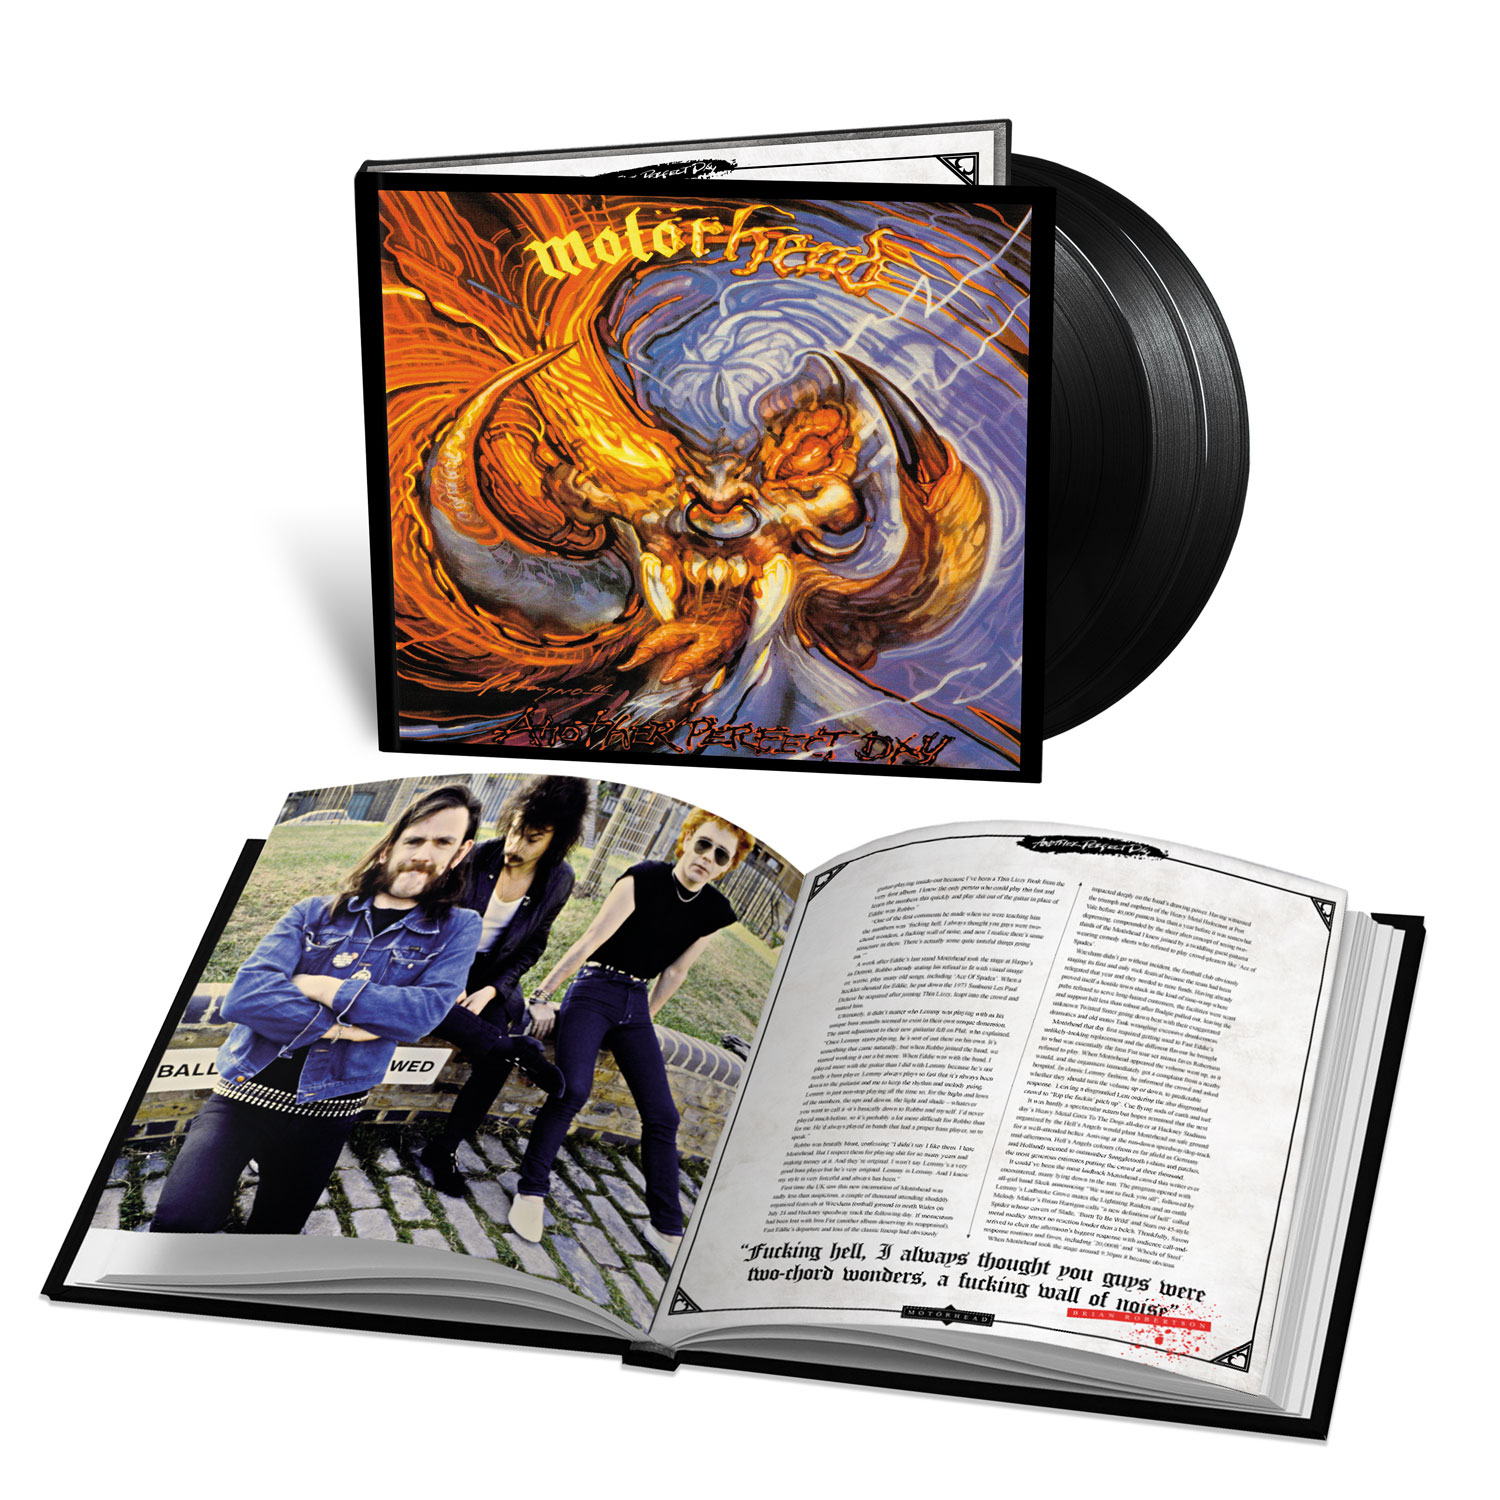 Siempre el álbum más controvertido del catálogo de Motörhead, Another Perfect Day se enfrentó a él desde el principio.